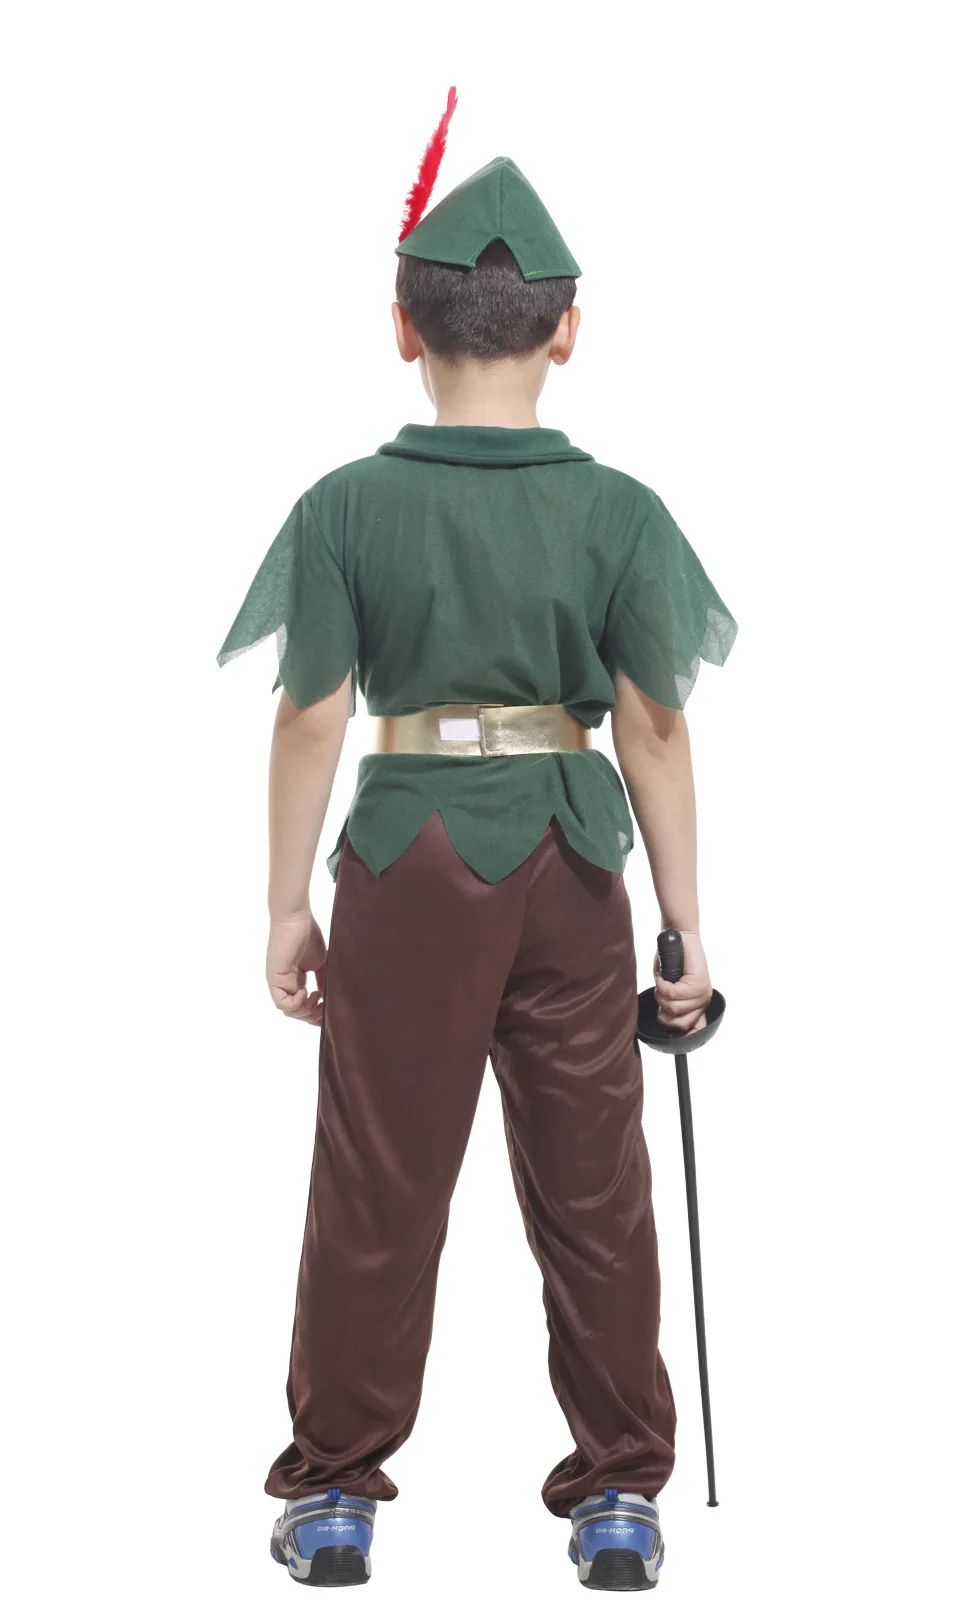 Детский карнавальный костюм Пурима Питера Пэна для мальчиков, одежда рыцаря леса Робина Гуда, маскарадный костюм для Хэллоуина, сцены, драмы, вечеринки, нарядное платье